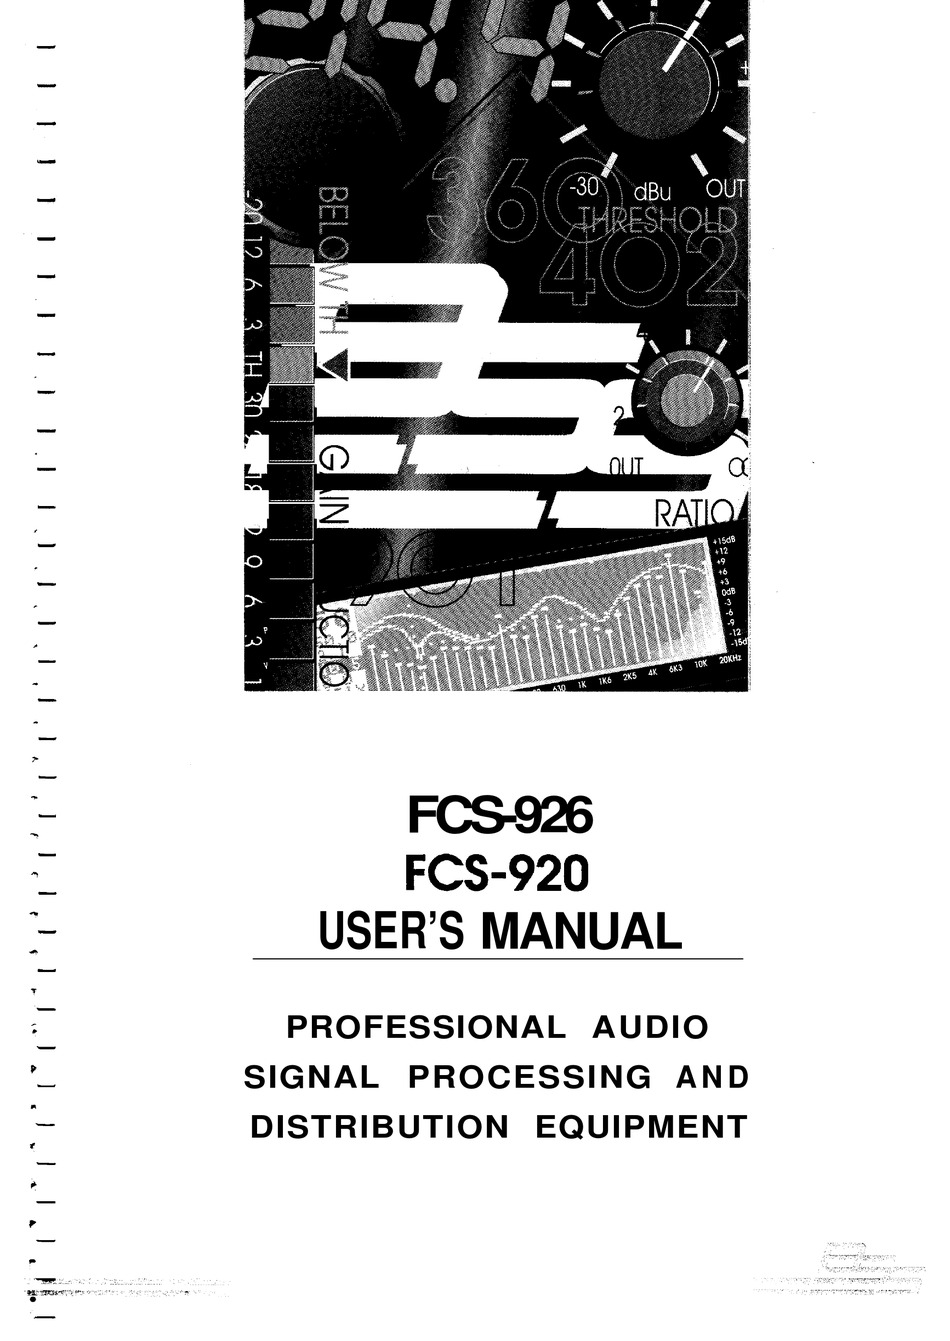 BSS AUDIO FCS-926 USER MANUAL Pdf Download | ManualsLib